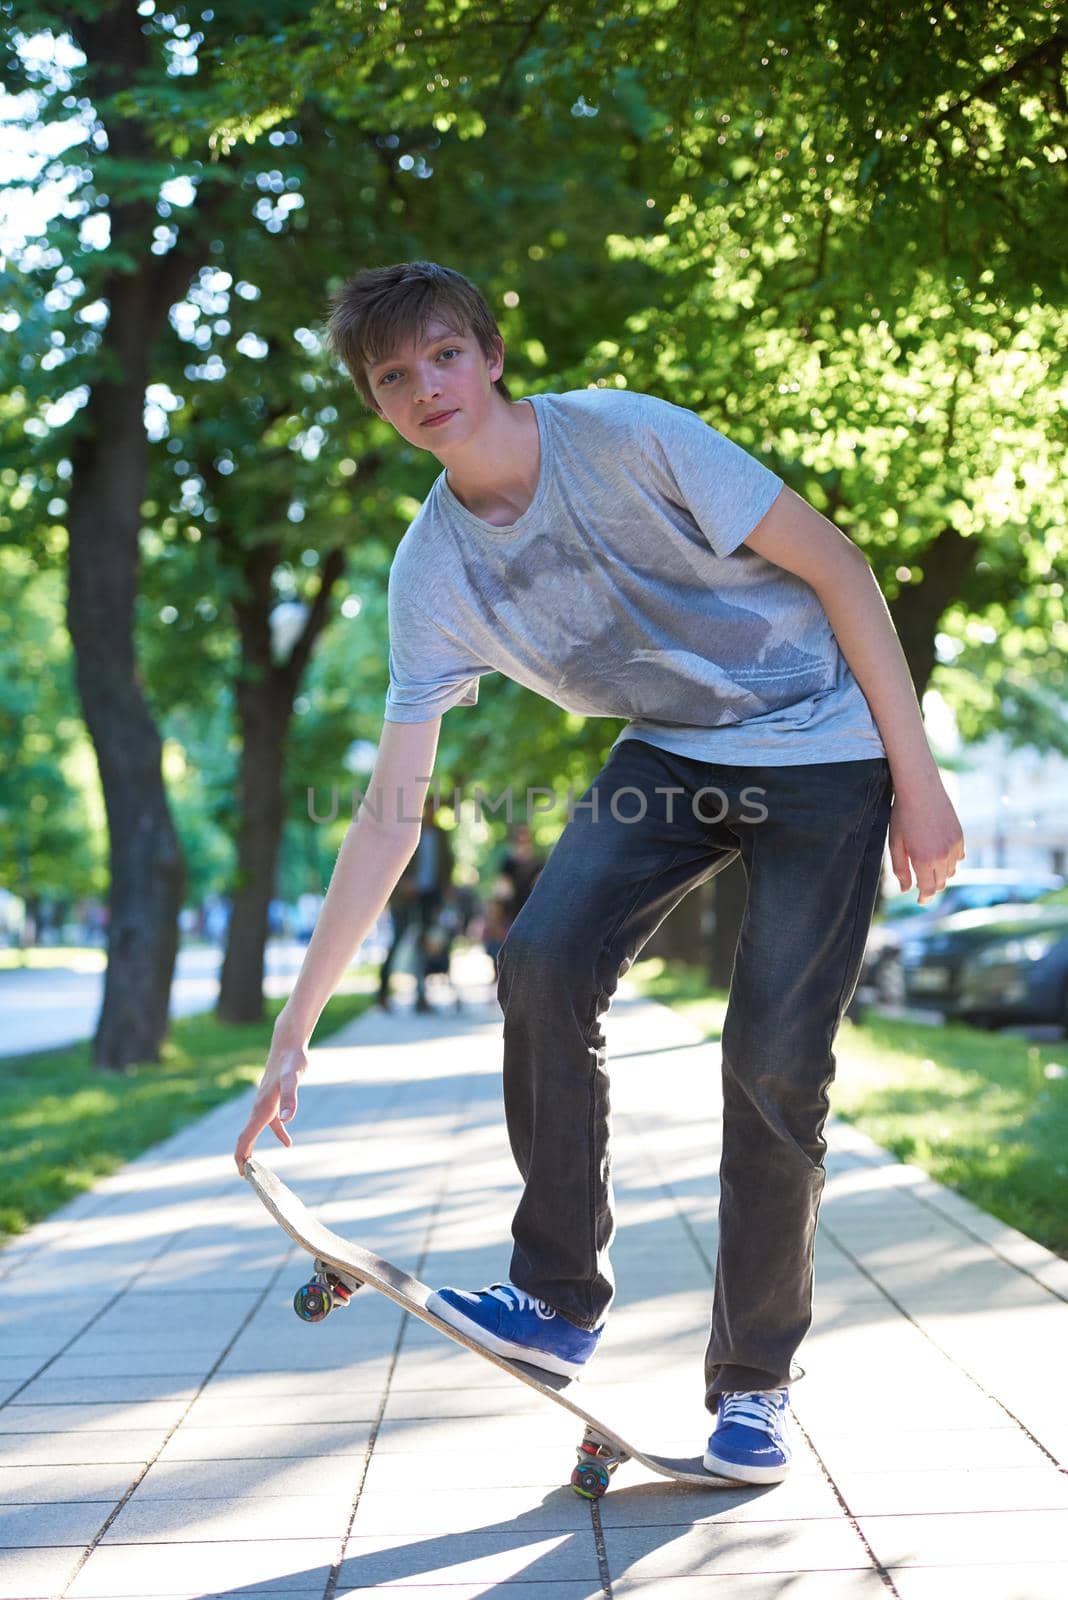 skateboard jump by dotshock